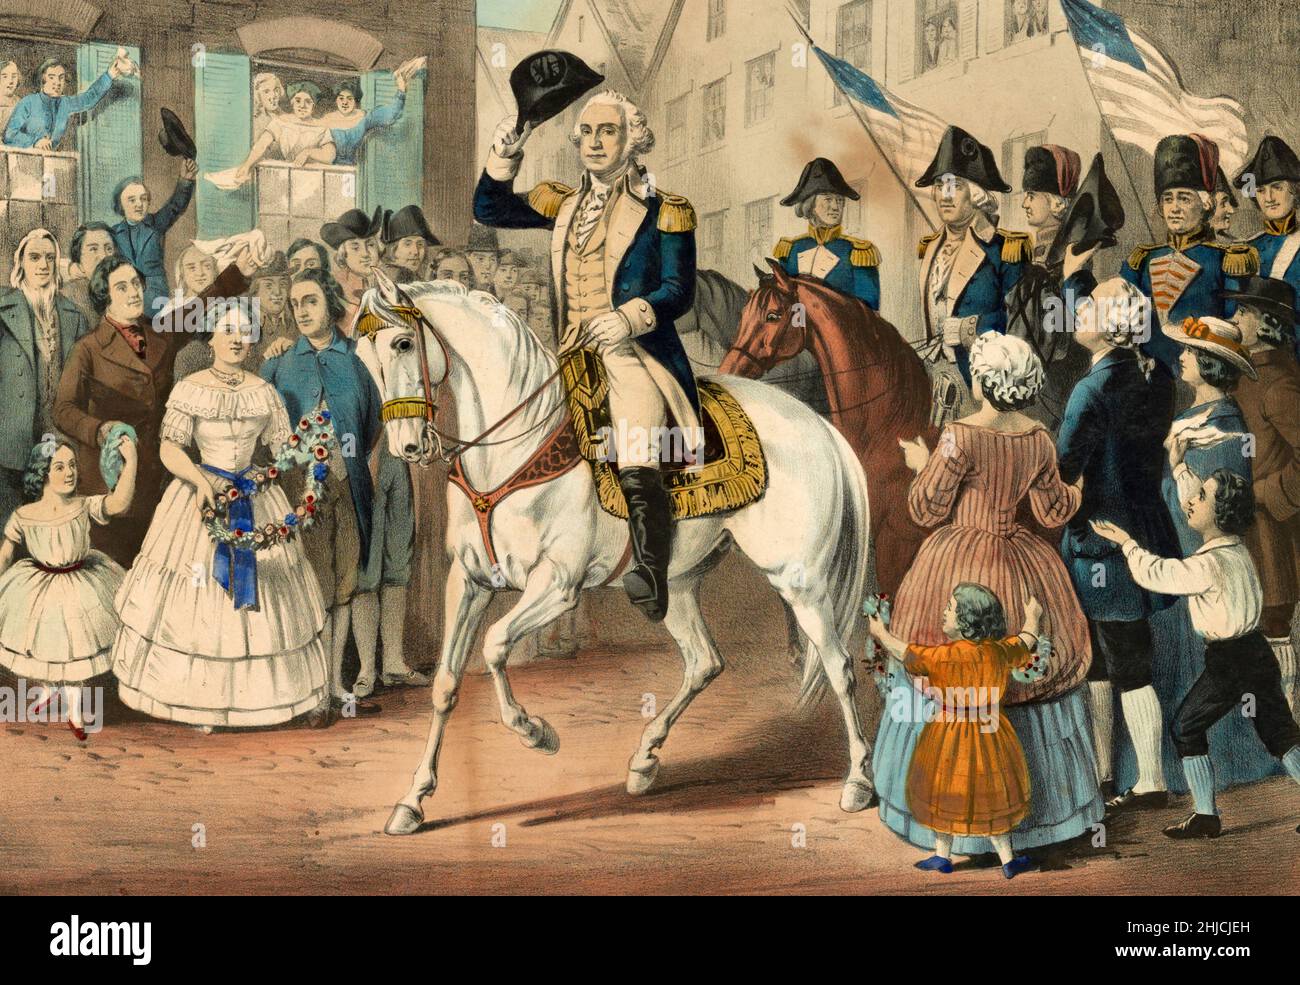 L'ingresso di George Washington a New York, sull'evacuazione della città da parte degli inglesi dopo la Rivoluzione americana, novembre 25th 1783. Litografia colorata a mano pubblicata da Currier e Ives, 1857. Foto Stock